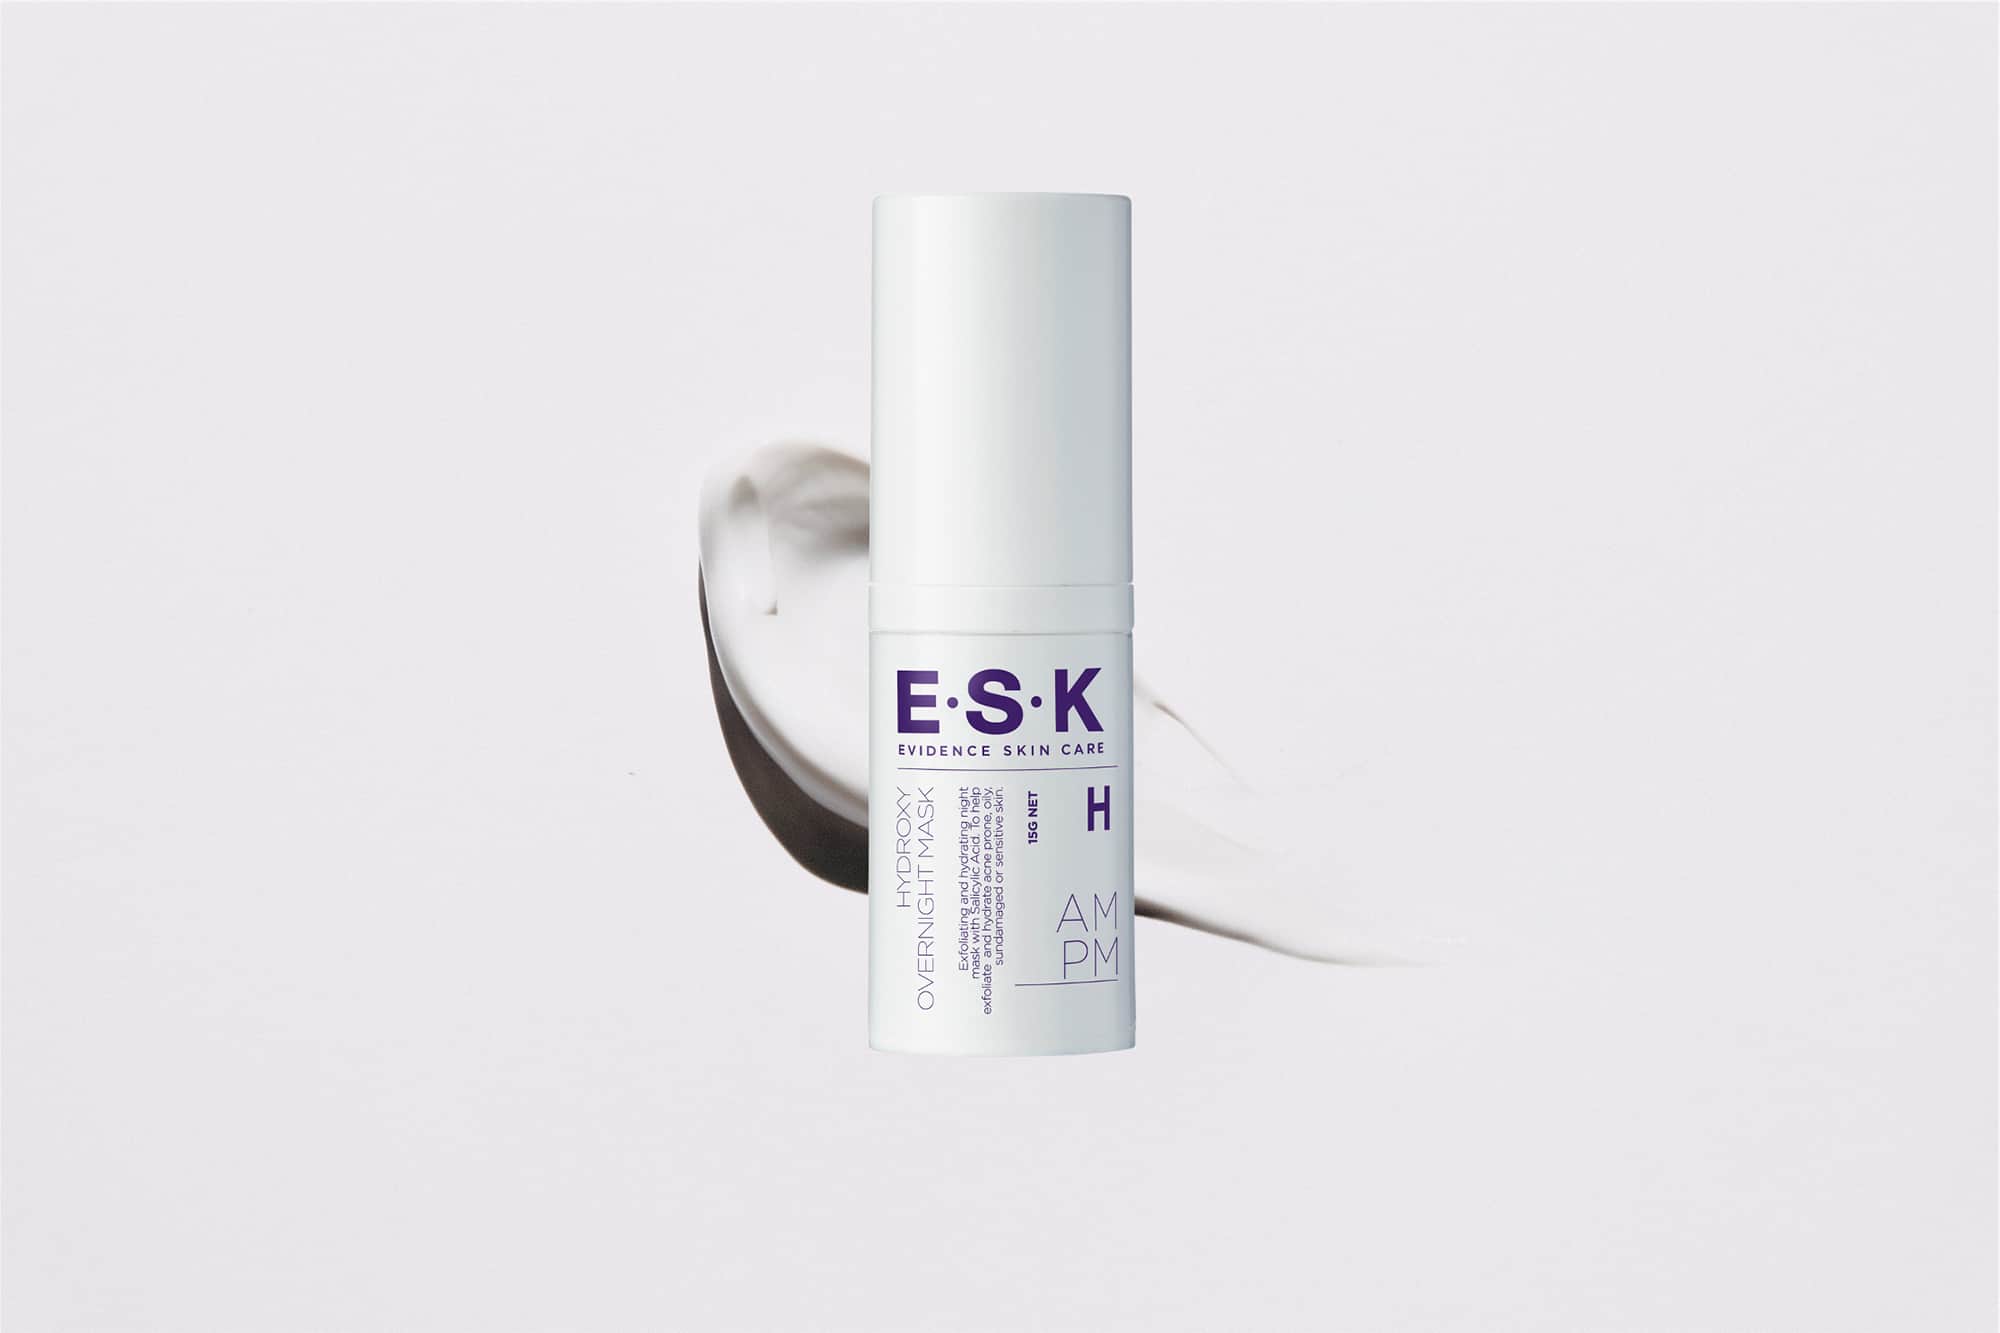 ESK Skincare Review